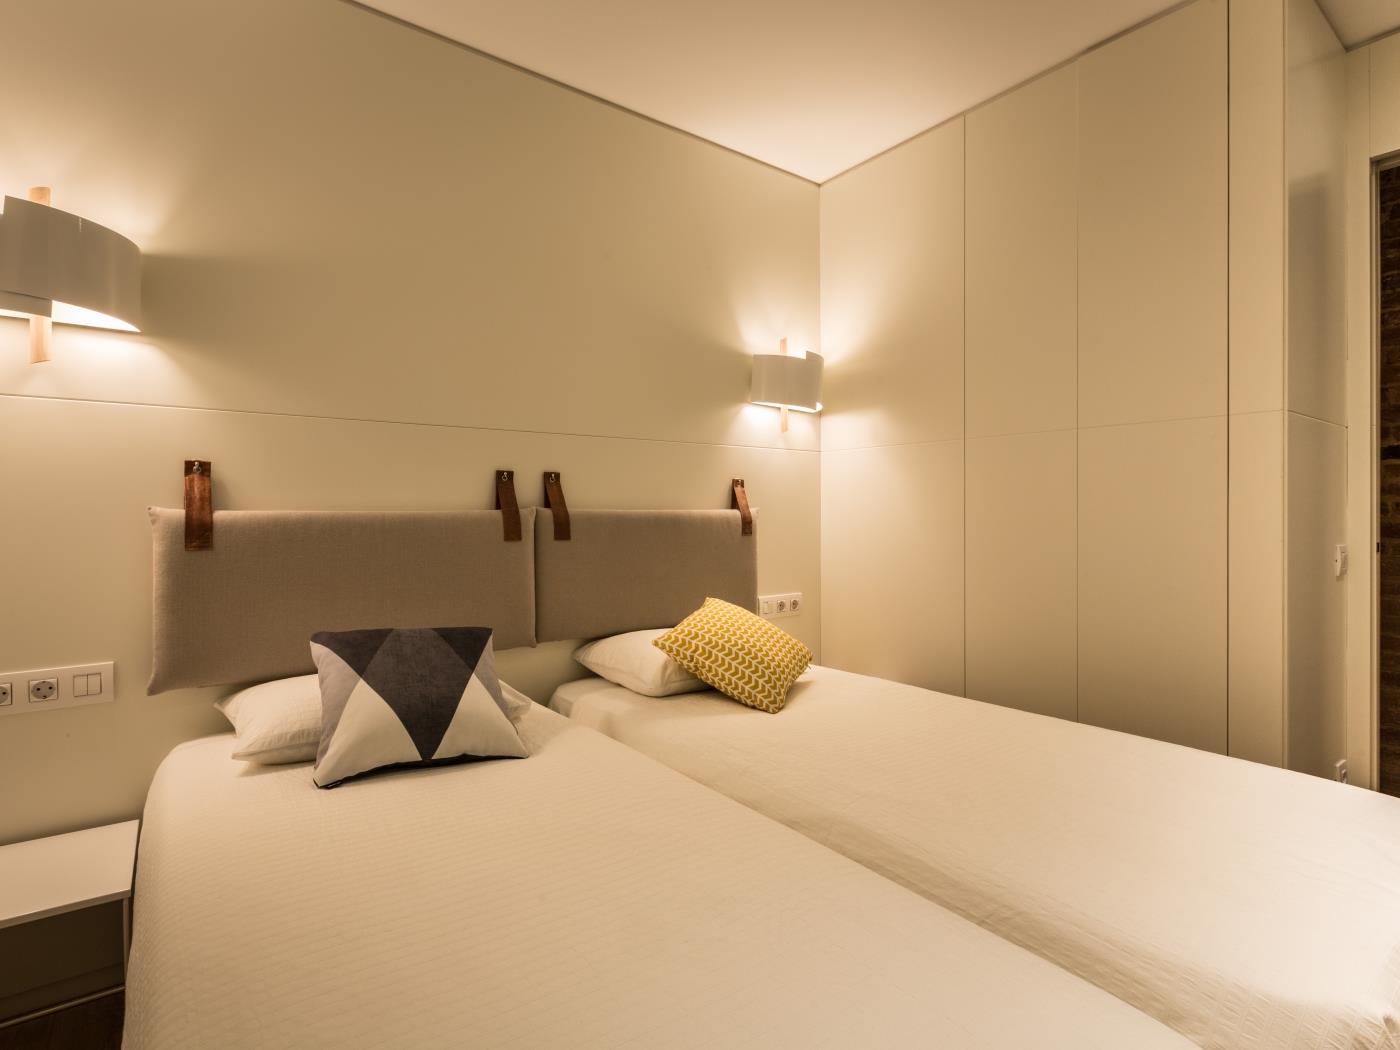 Schöne Wohnung im Herzen von Gracia, voll ausgestattet und möbliert - My Space Barcelona Appartementen